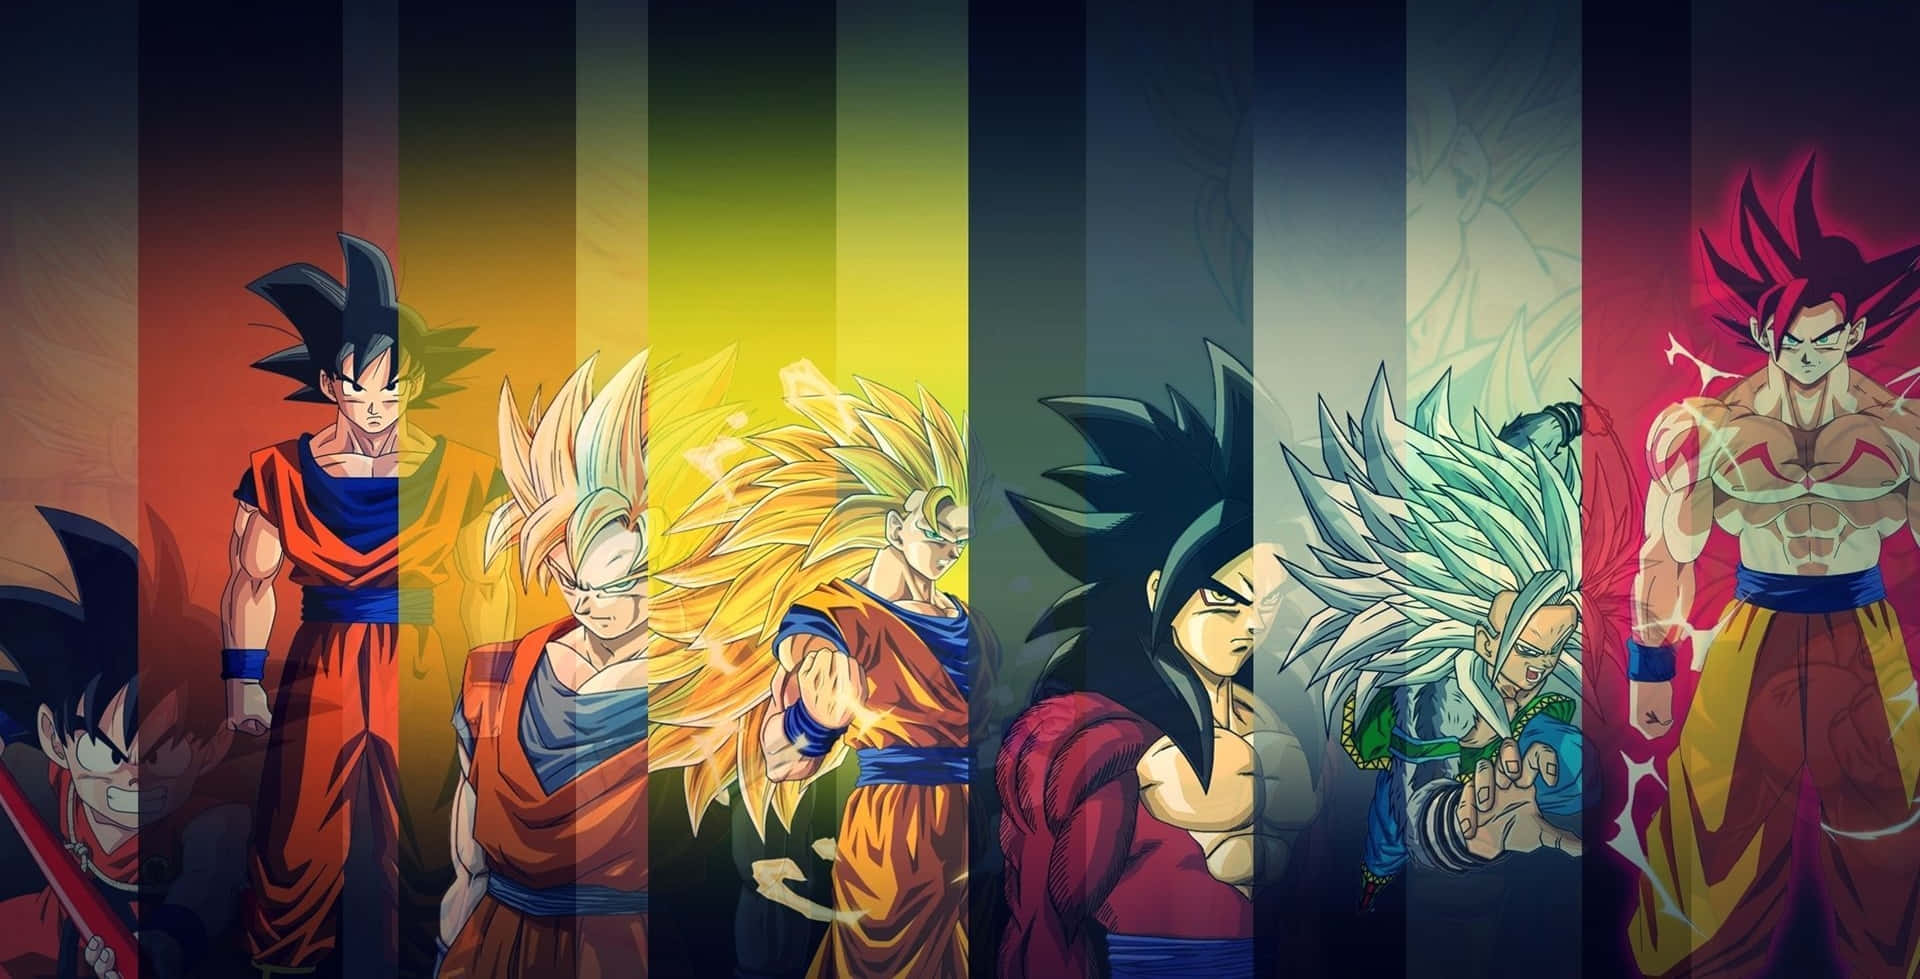 Imagemcolorida De Son Goku De Dragon Ball Z.